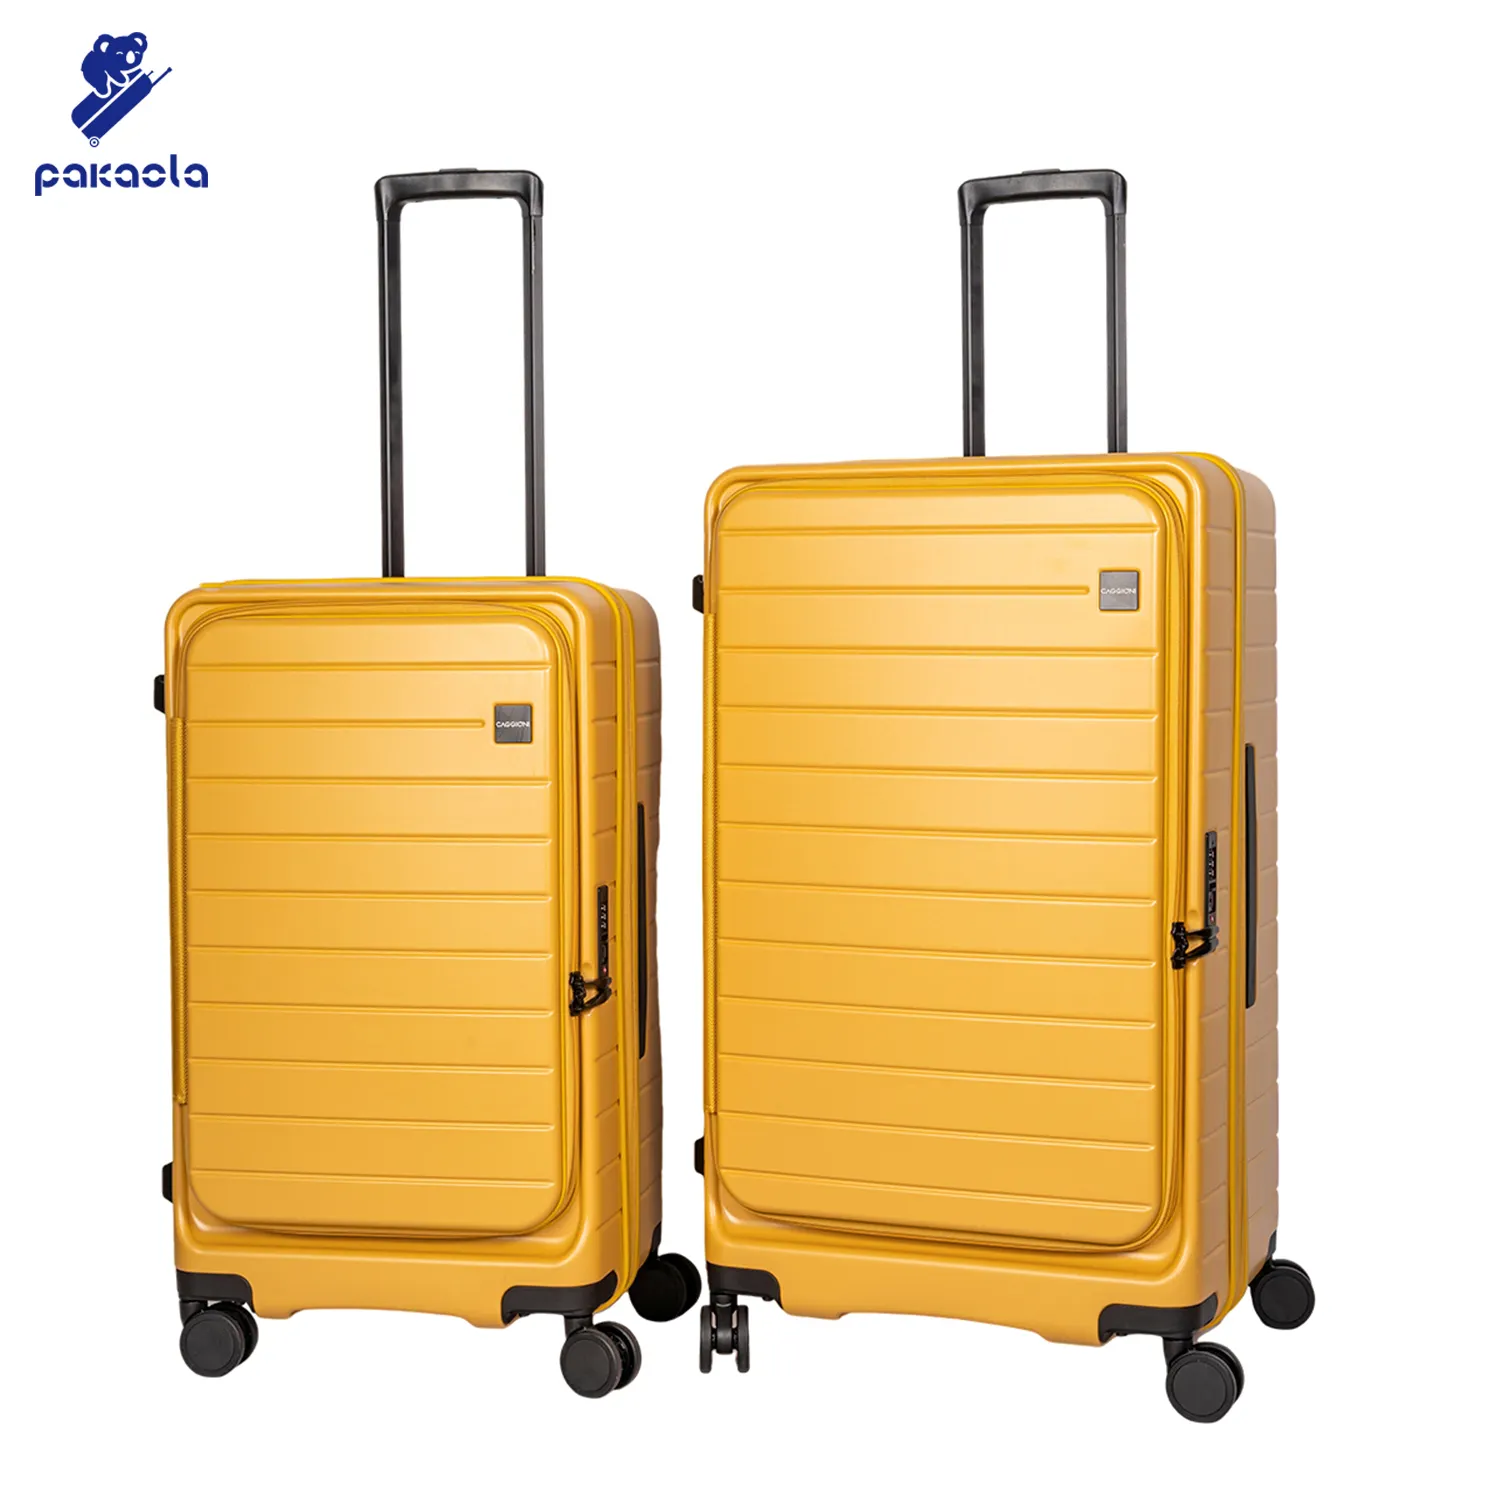 Nouvel arrivage de valises de voyage PC avec poches latérales 25 29 pouces à ouverture latérale Trolley